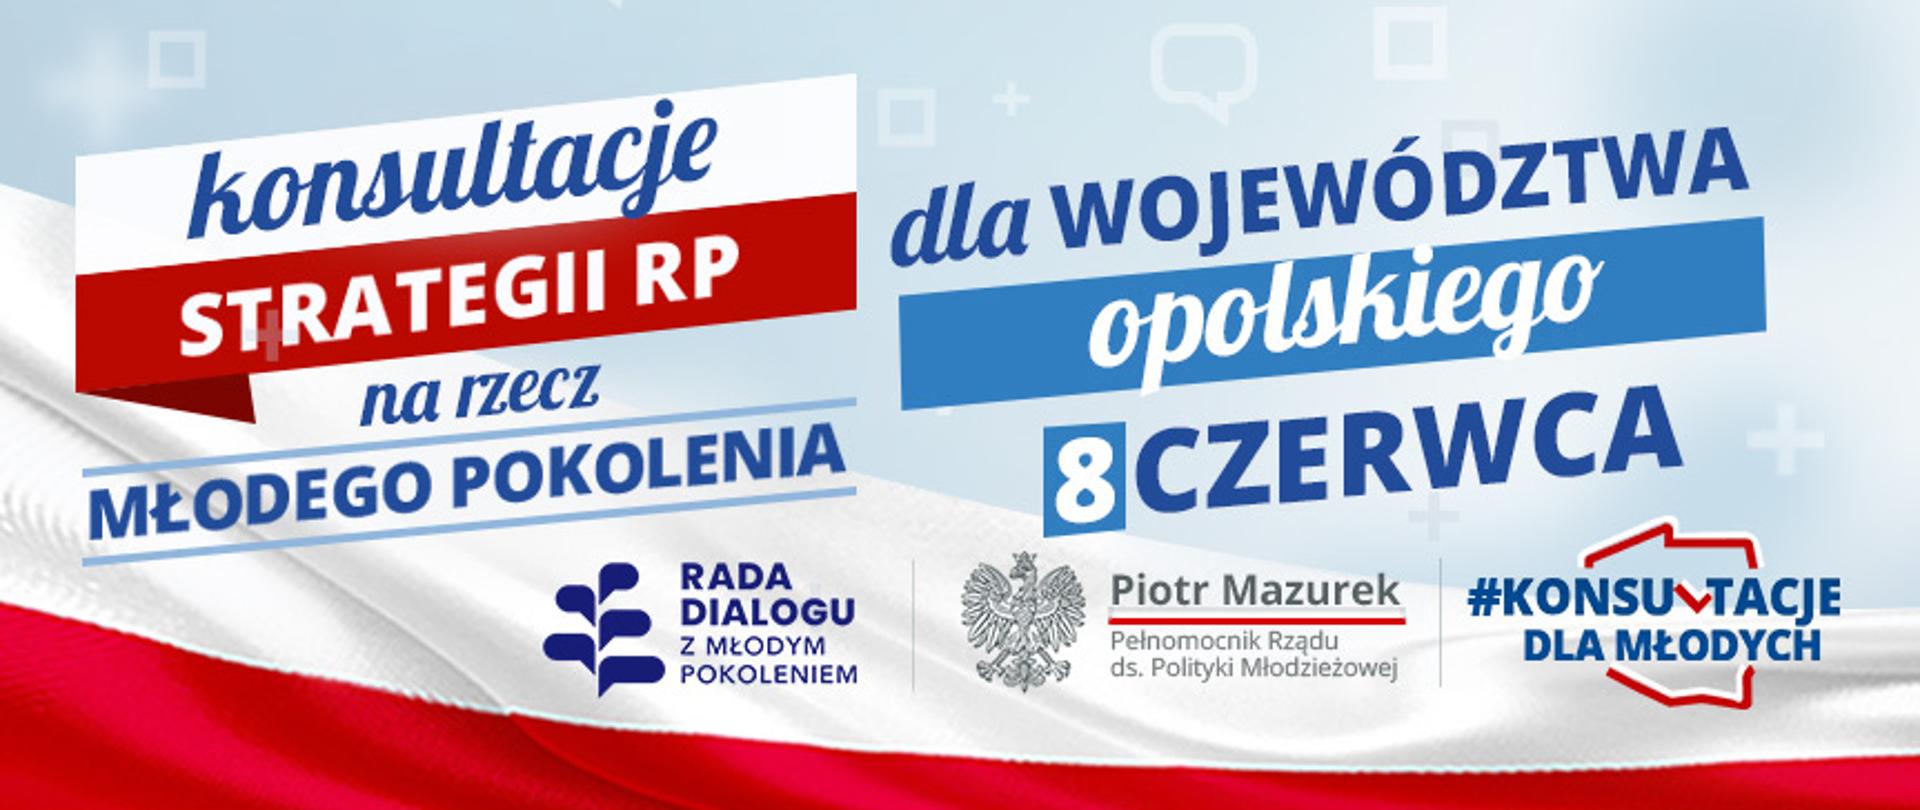 Zapisz się na konsultacje strategii dla młodych w woj. opolskiego - ogłosił Piotr Mazurek, Pełnomocnik Rządu ds Polityki Młodzieżowej